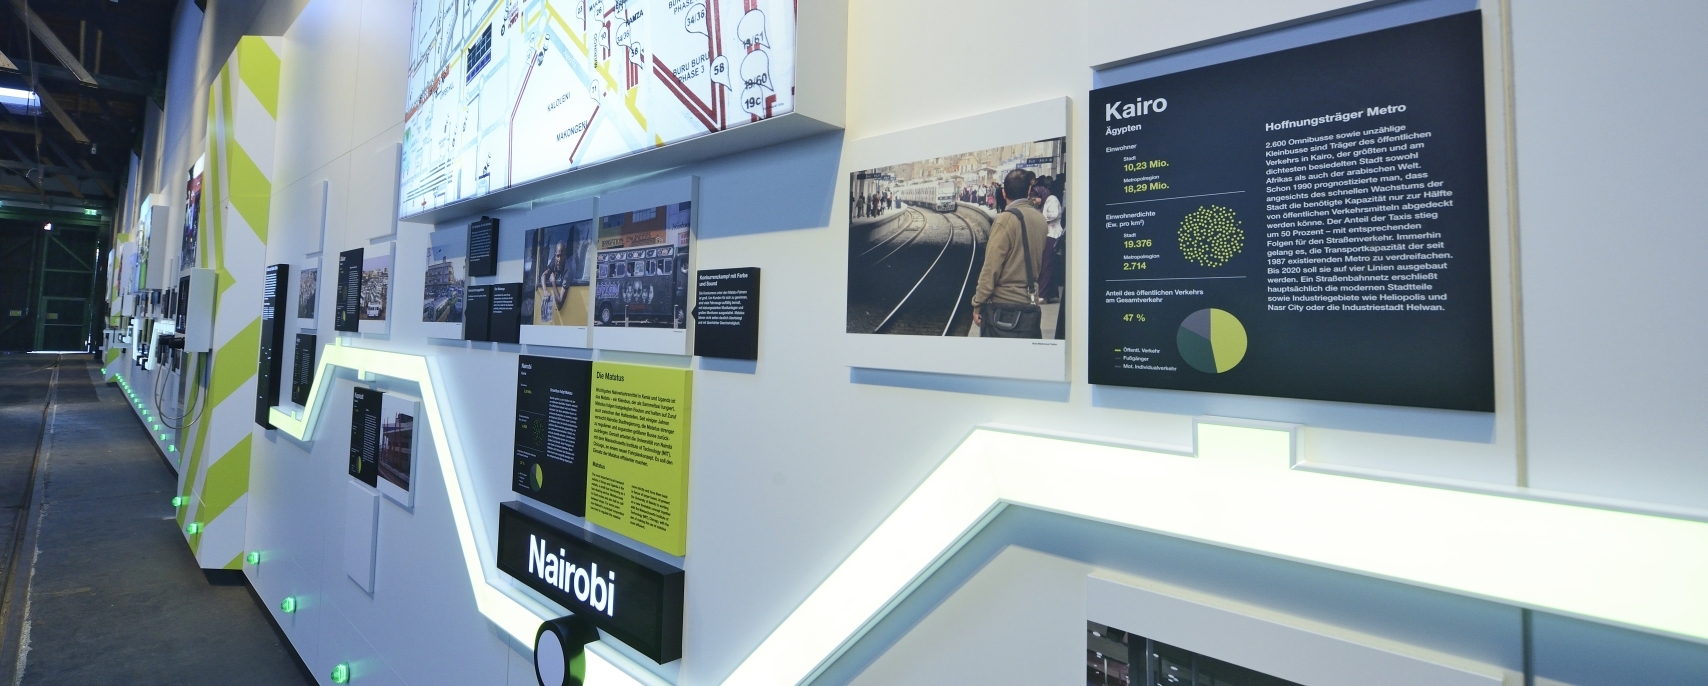 Im erweiterten Ausstellungsbereich des Verkehrsmuseums Remise werden internationale Öffi-Modelle in Städten auf der ganzen Welt vorgestellt.